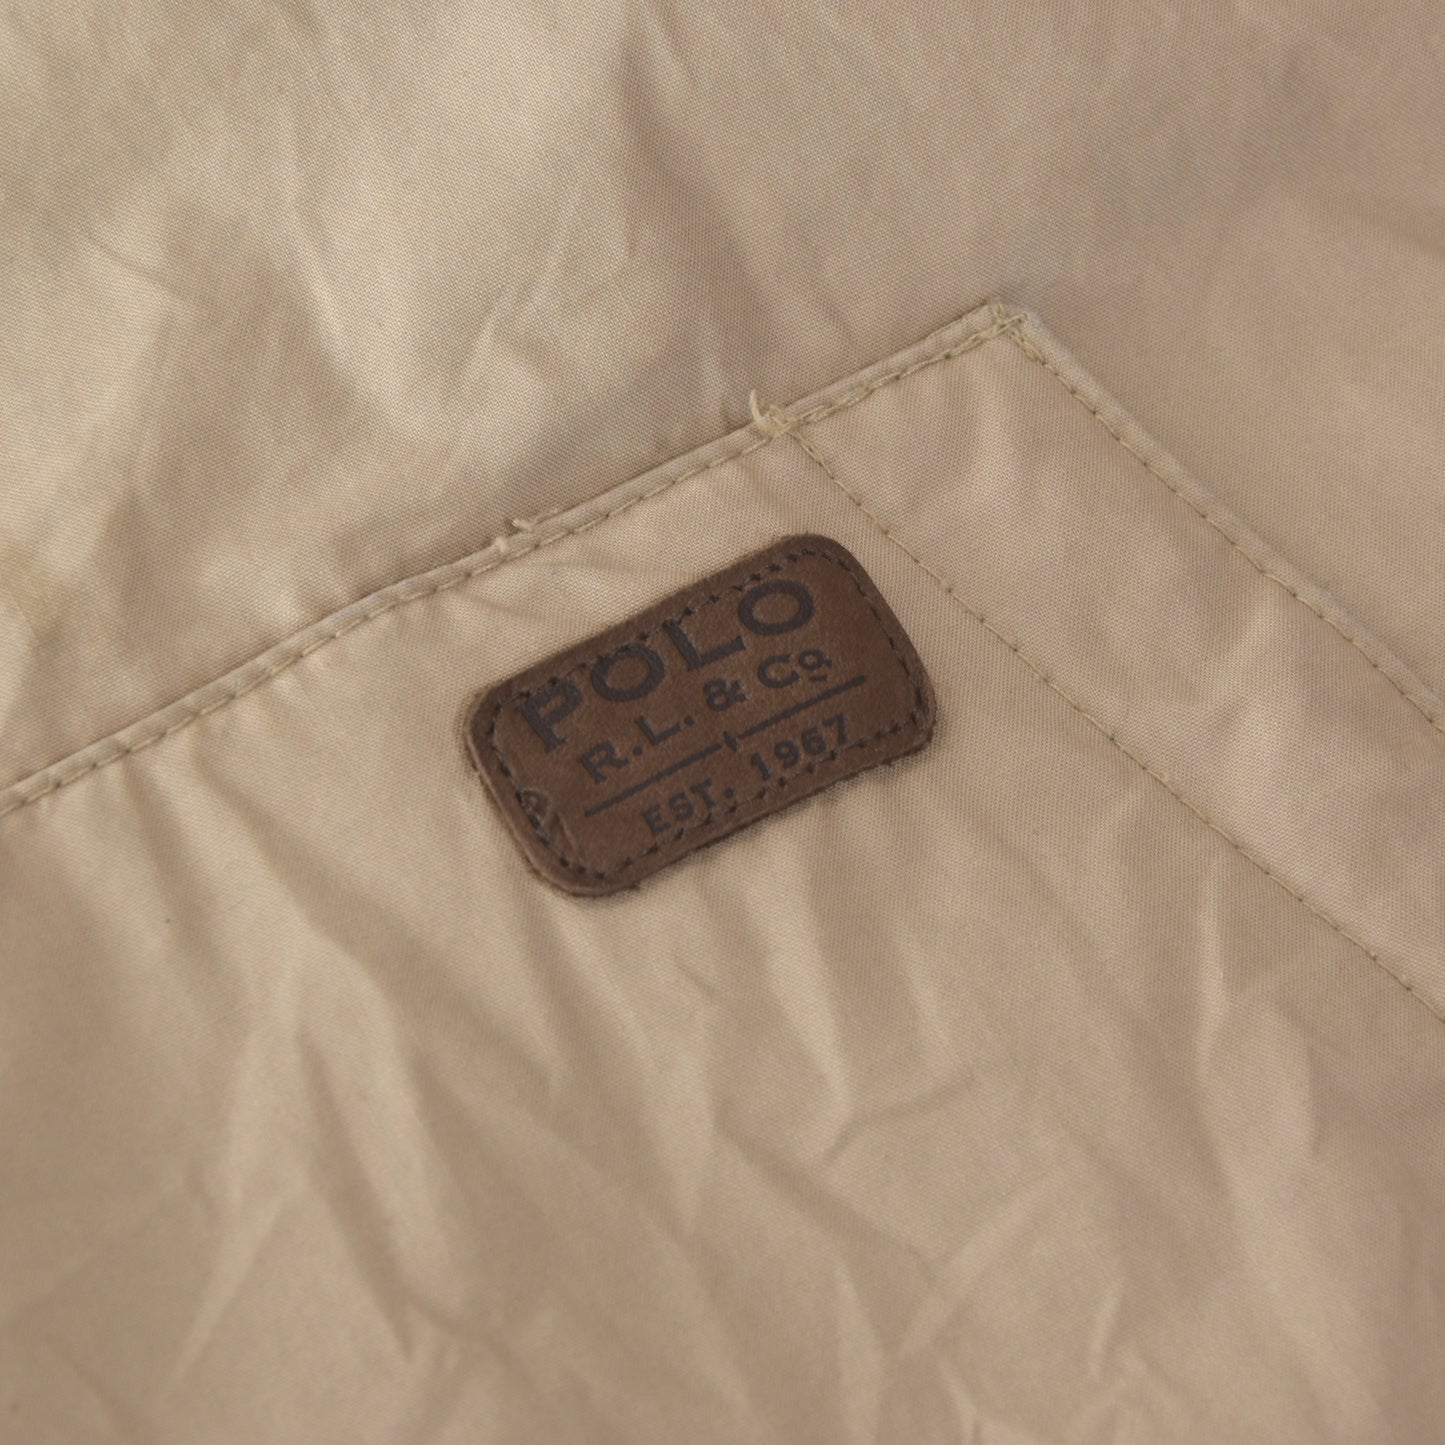 Polo Ralph Lauren Down Jacket Size M - Tan